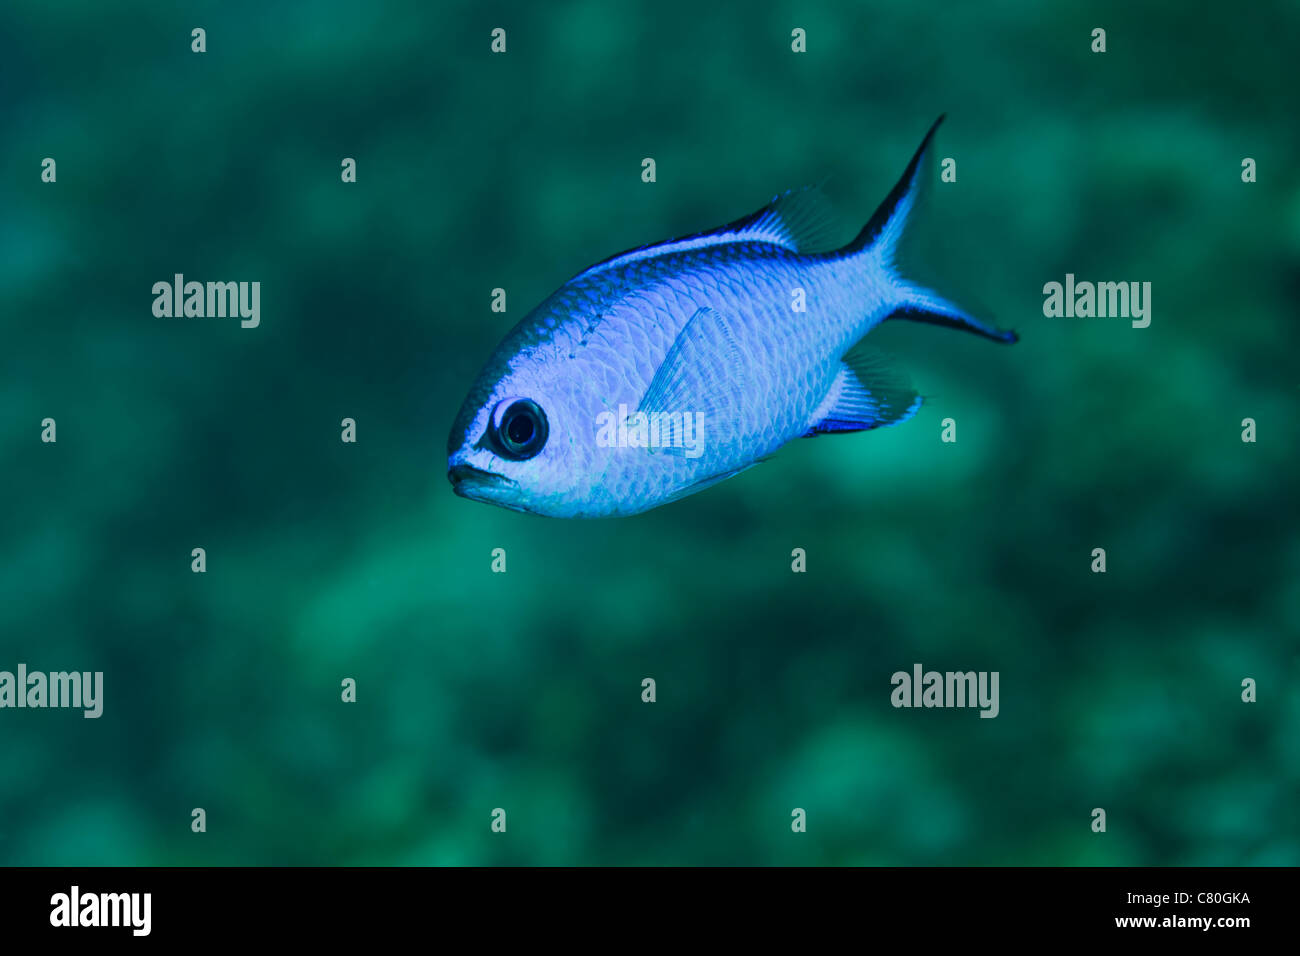 Pesce arrabbiato immagini e fotografie stock ad alta risoluzione - Alamy